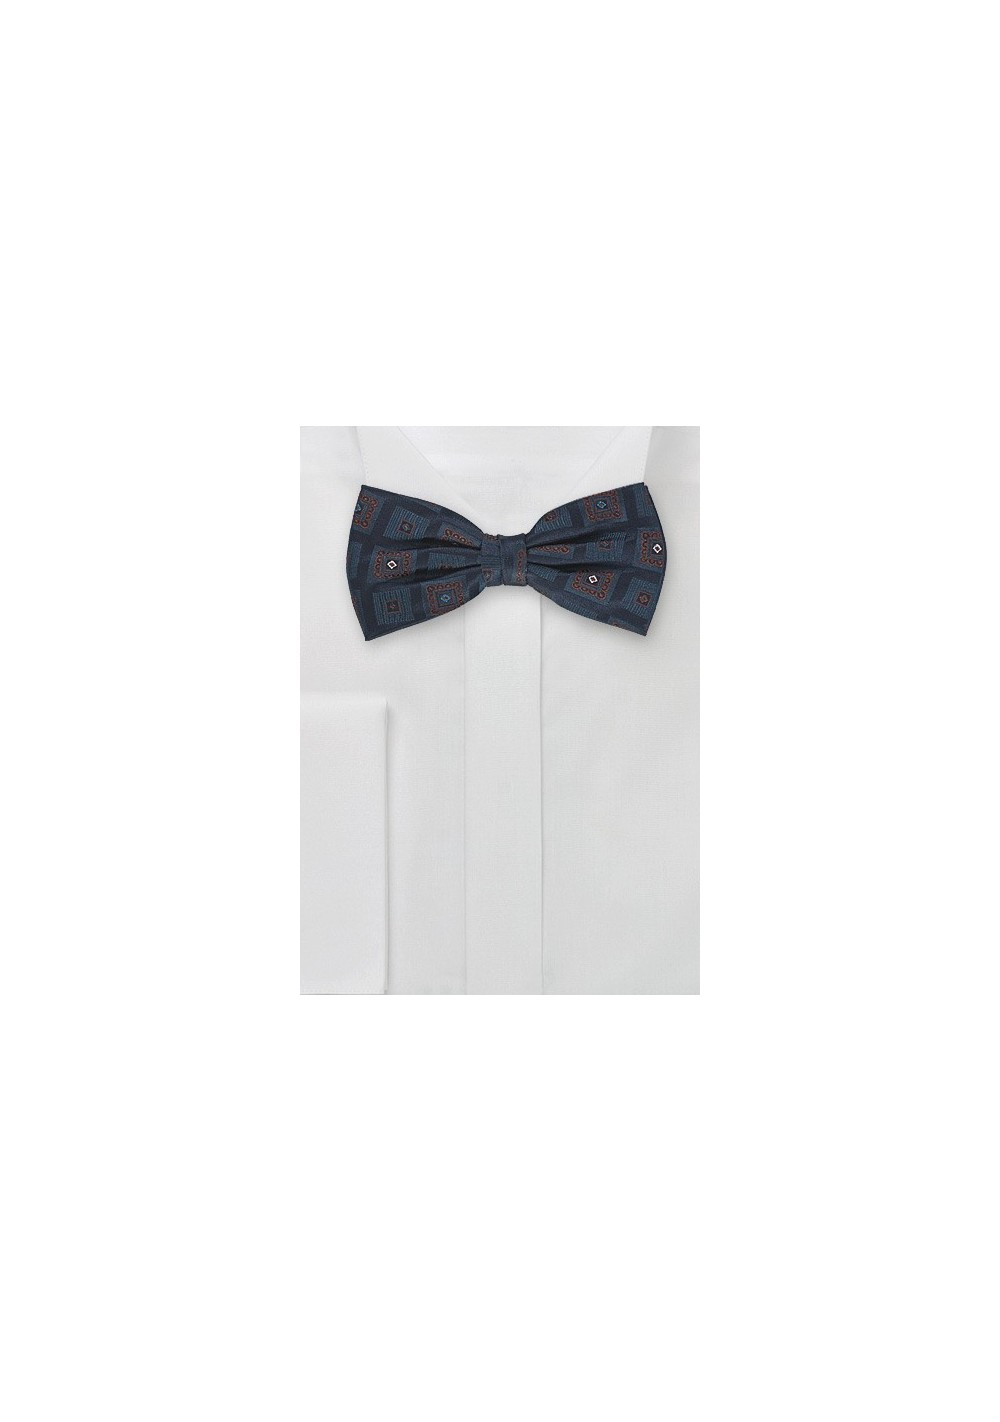 Silk Bow Tie in Navy Blue